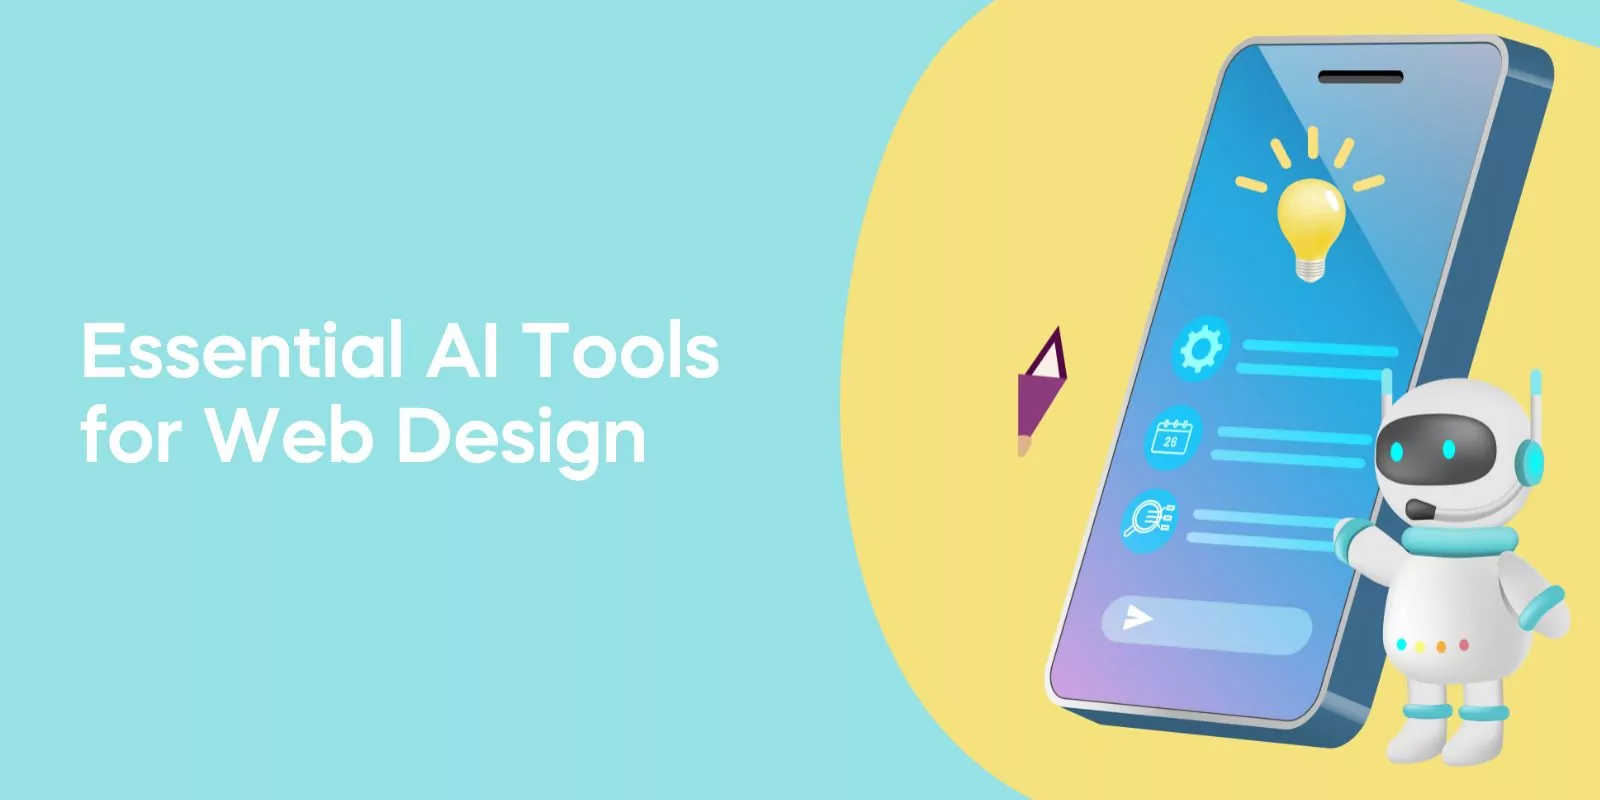 Essential AI Tools for Web Design